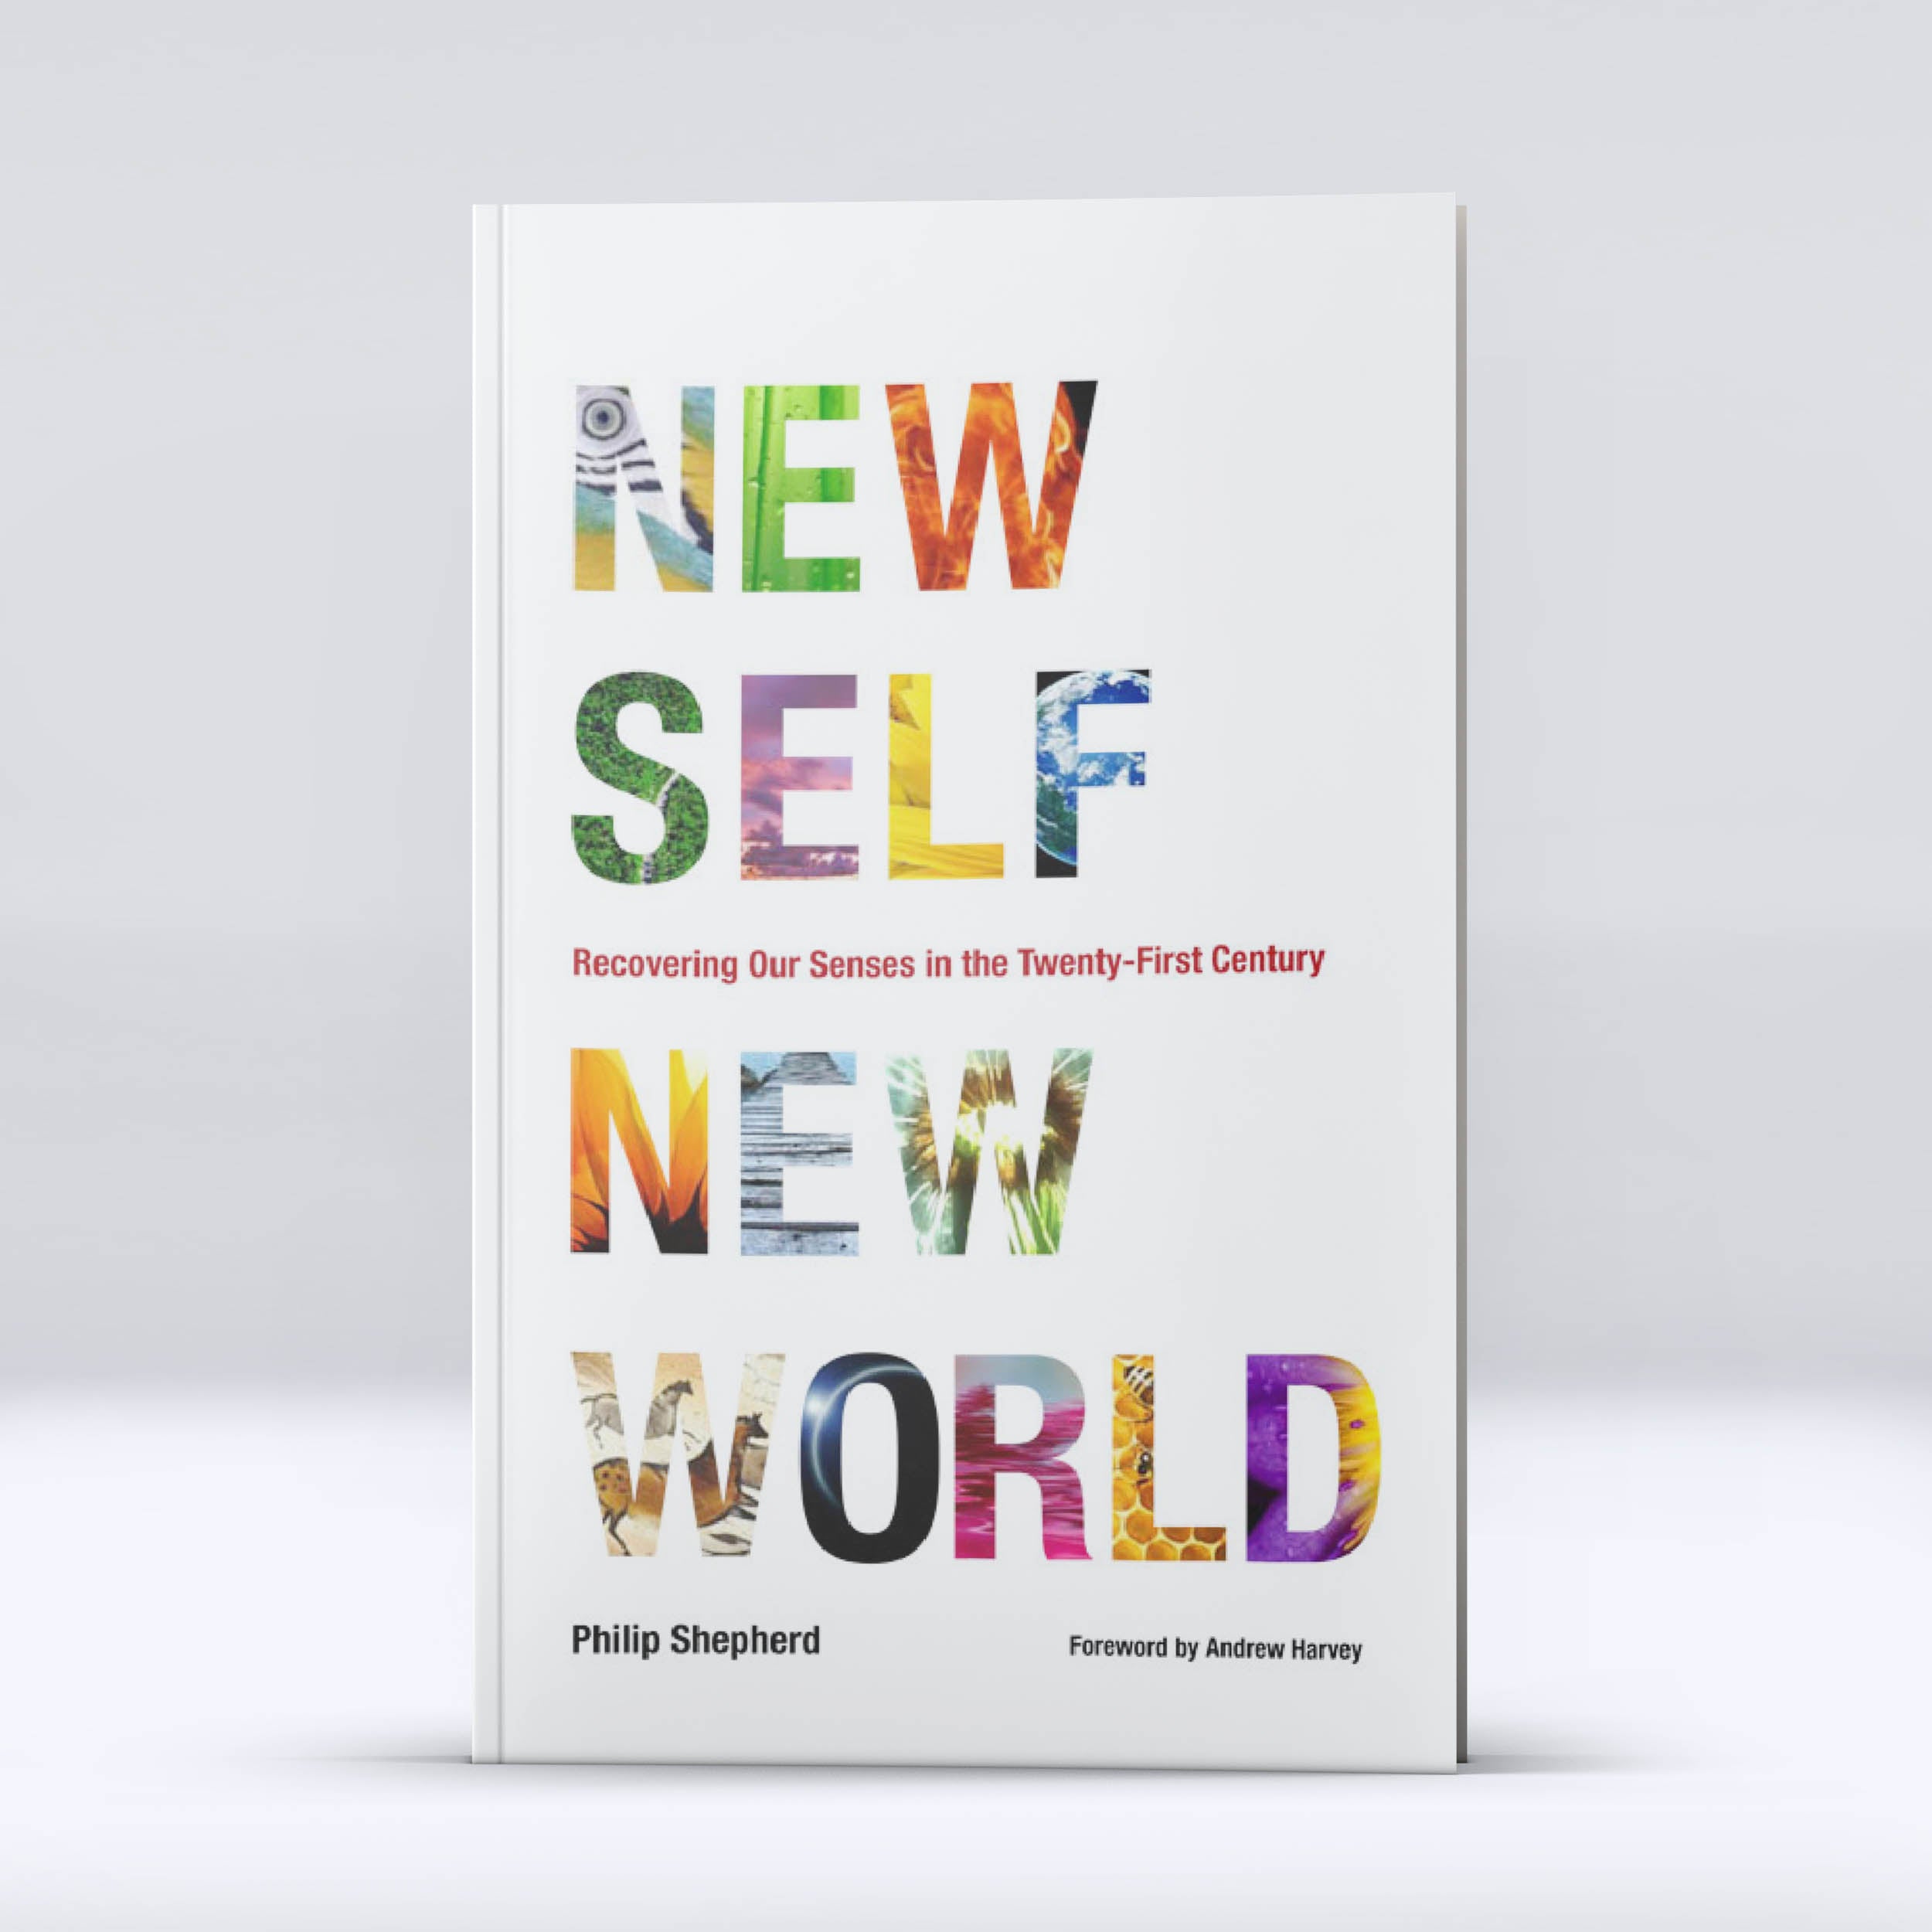 New Self New World by Philip Shepherd